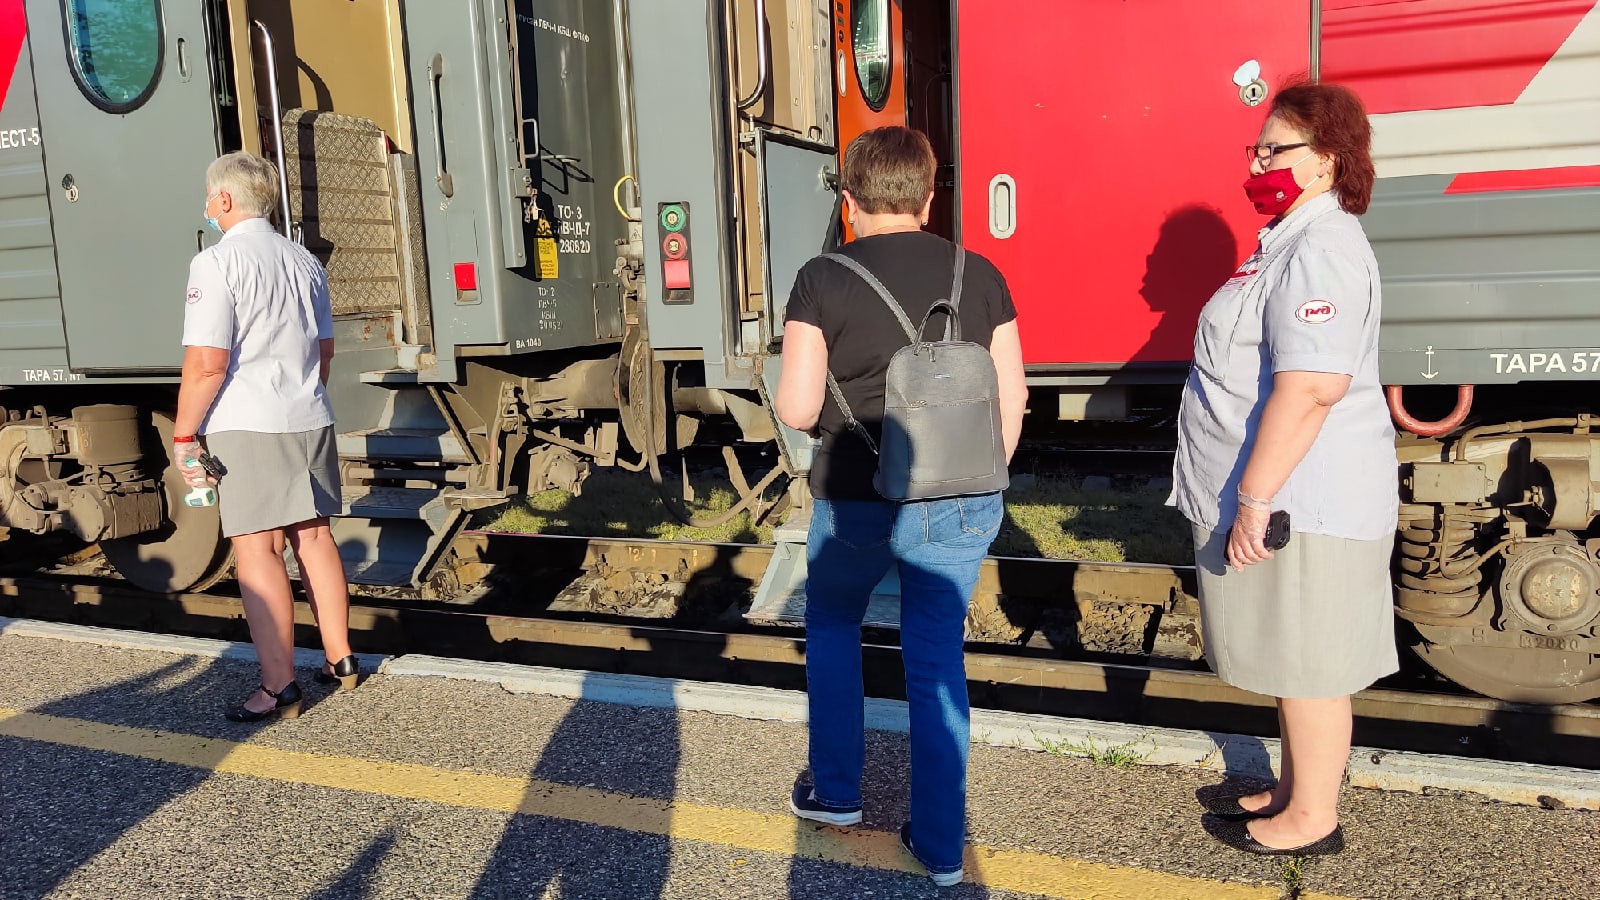 Вышвырнут даже с билетом: РЖД придумали хитроумную ловушку на дальних поездах